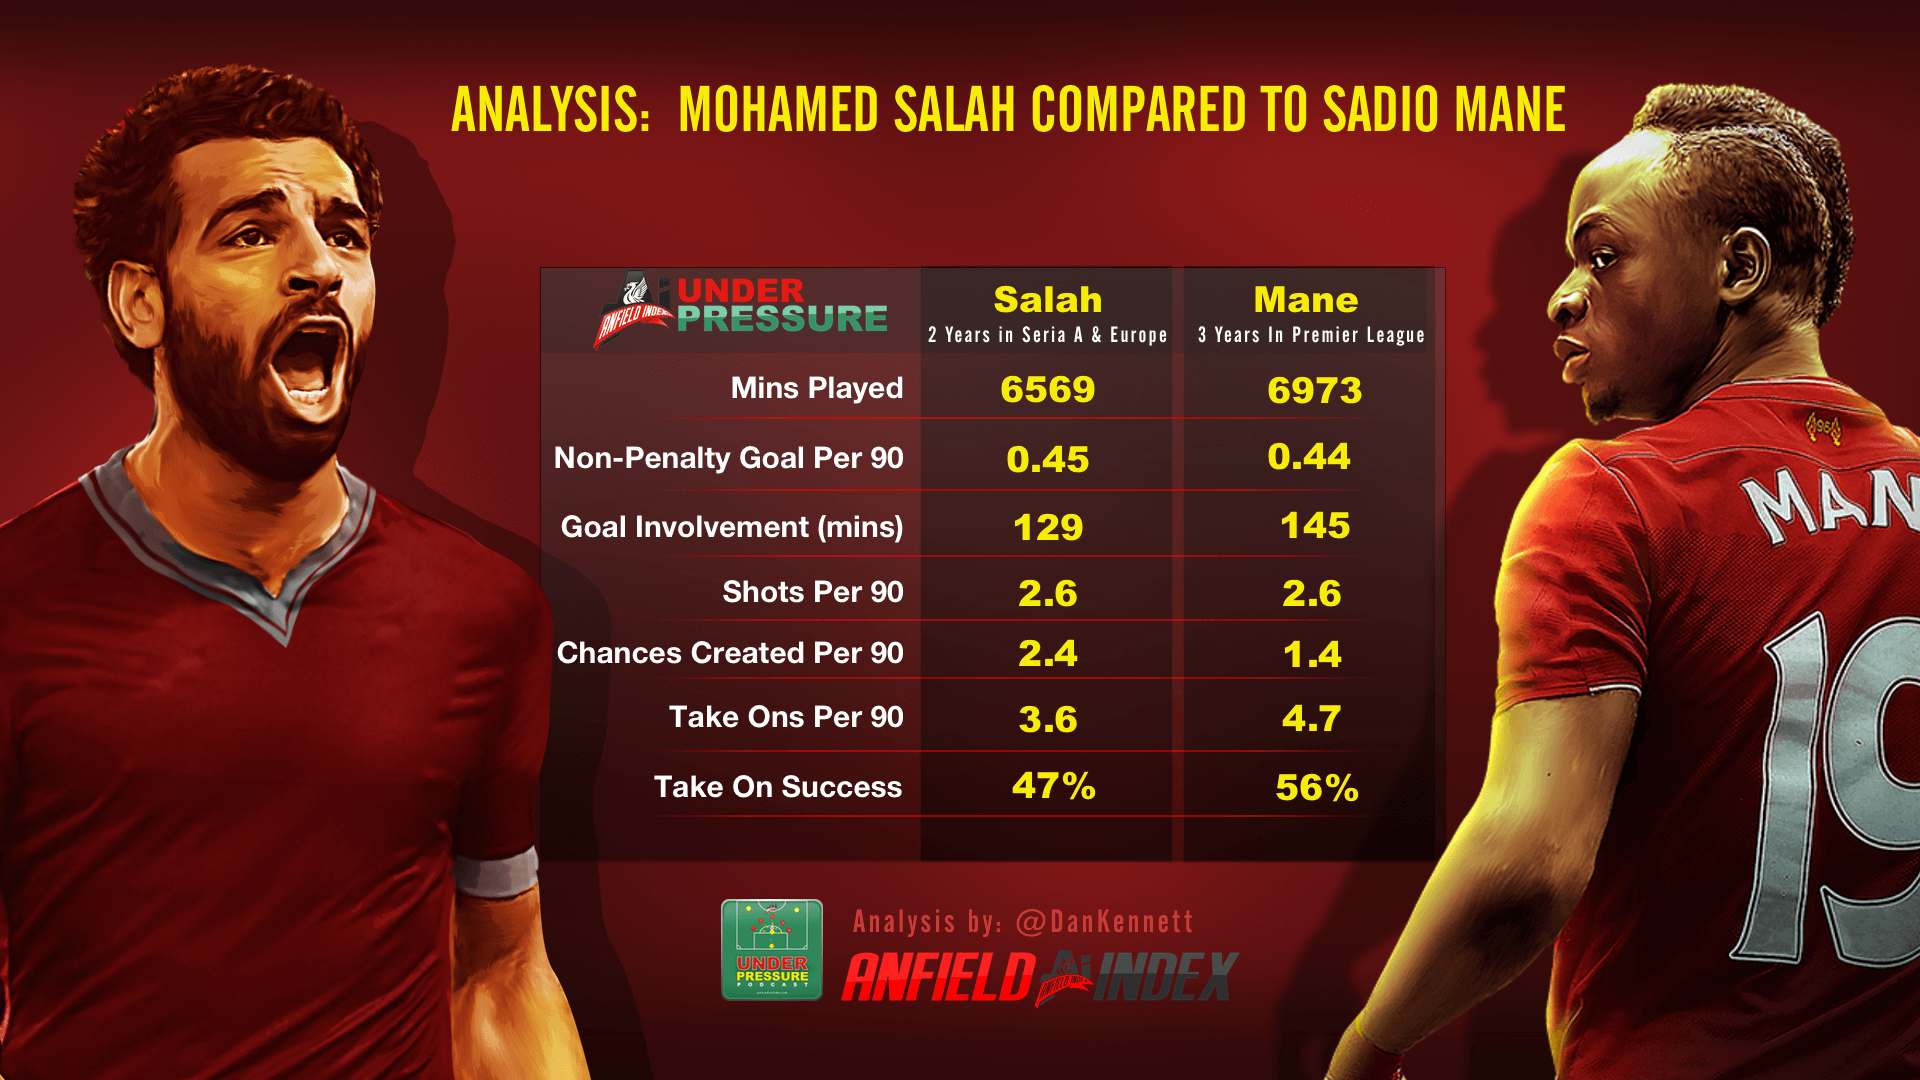 Analysis: Mohamed Salah compared to Sadio Mane